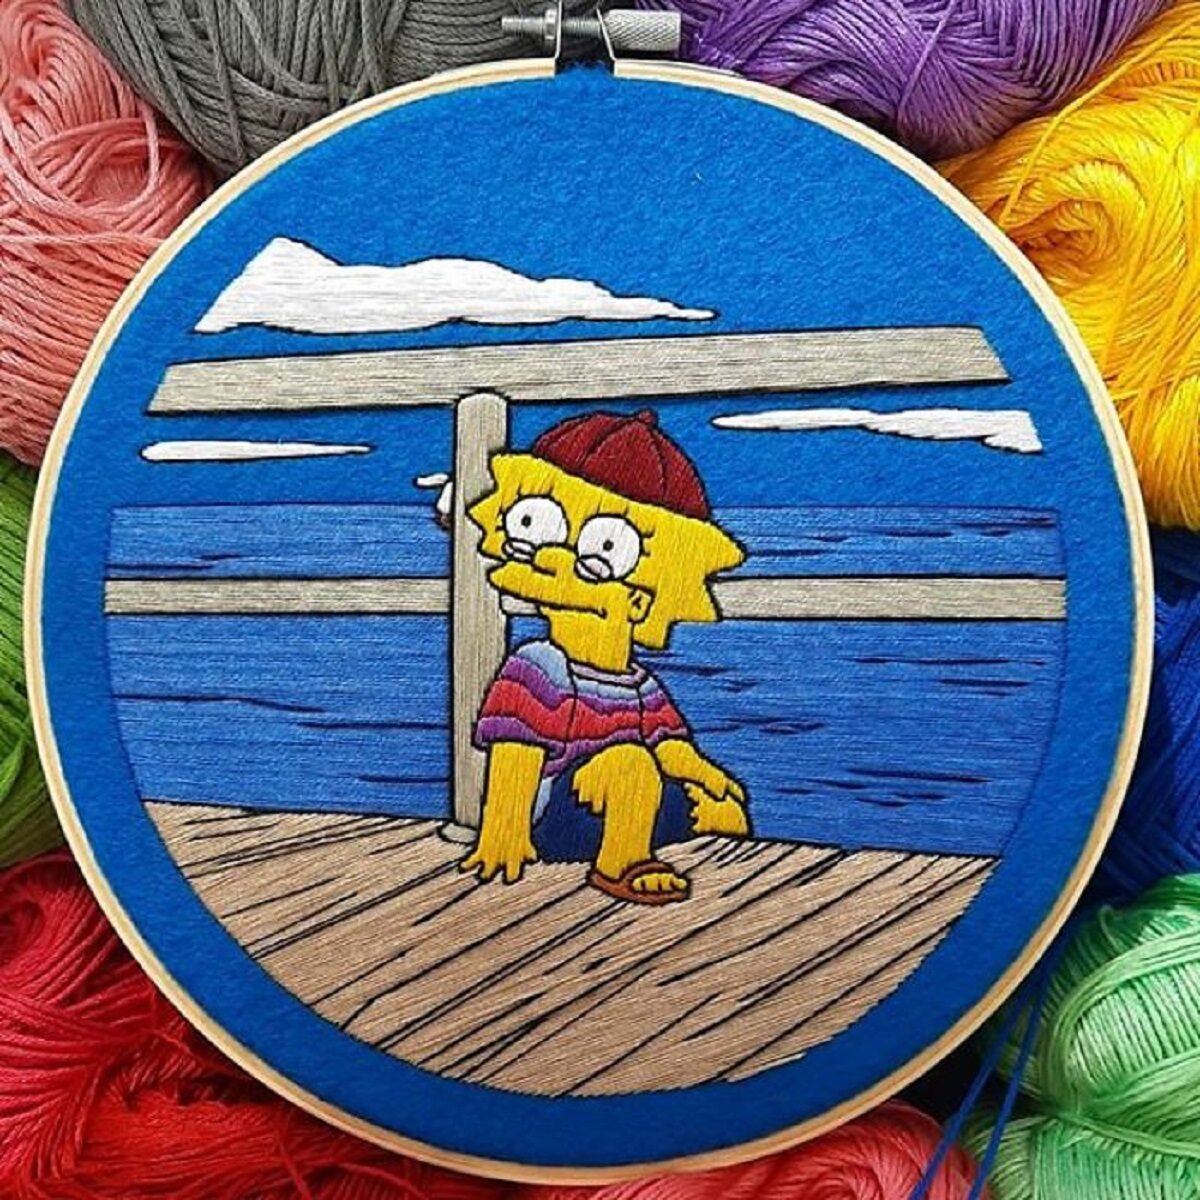 Artista Gabriela Martinez cria bordados de cenas de Os Simpsons 26